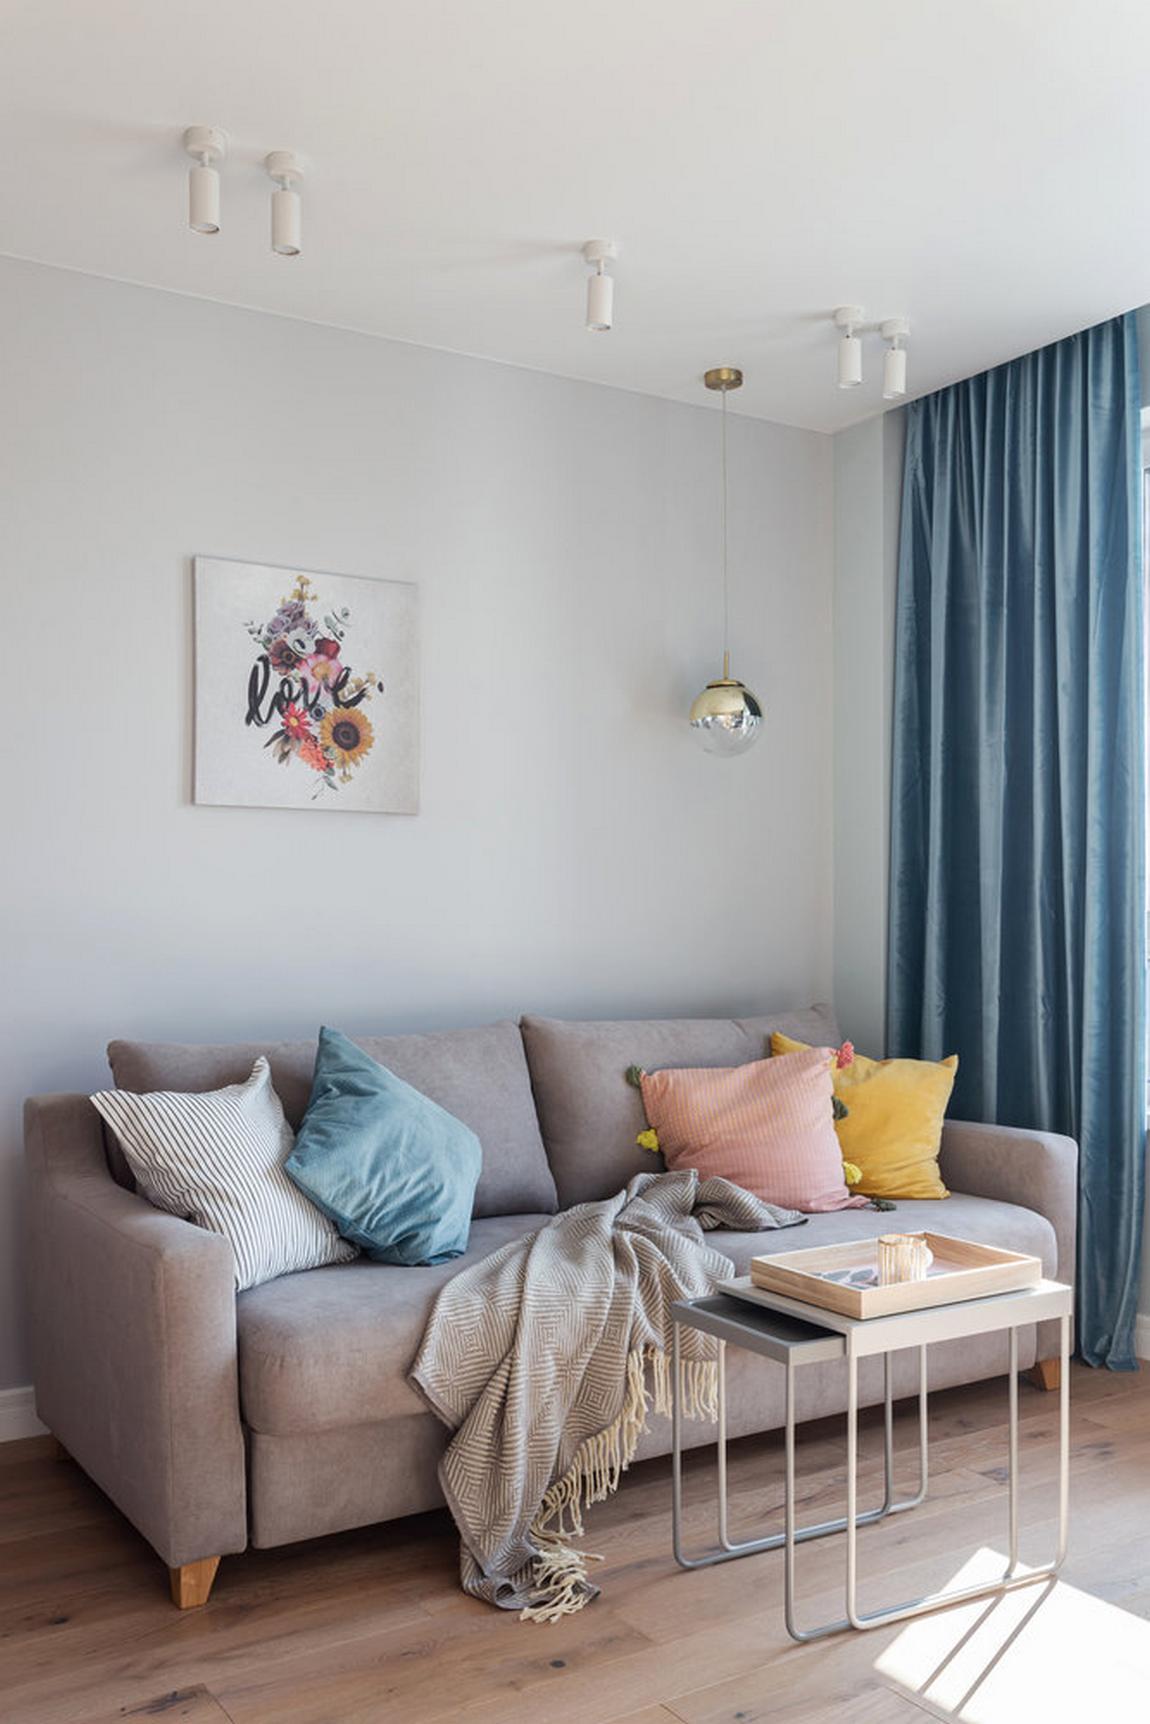 Phòng khách có thiết kế nội thất đơn giản nhưng sinh động về màu sắc. Chiếc ghế sofa màu xám với bộ sưu tập gối tựa 4 màu hồng, vàng, xanh, trắng dễ thương. Chiếc bàn nước '2 trong 1' cũng tăng thêm tính tiện ích và gọn gàng cho căn hộ.